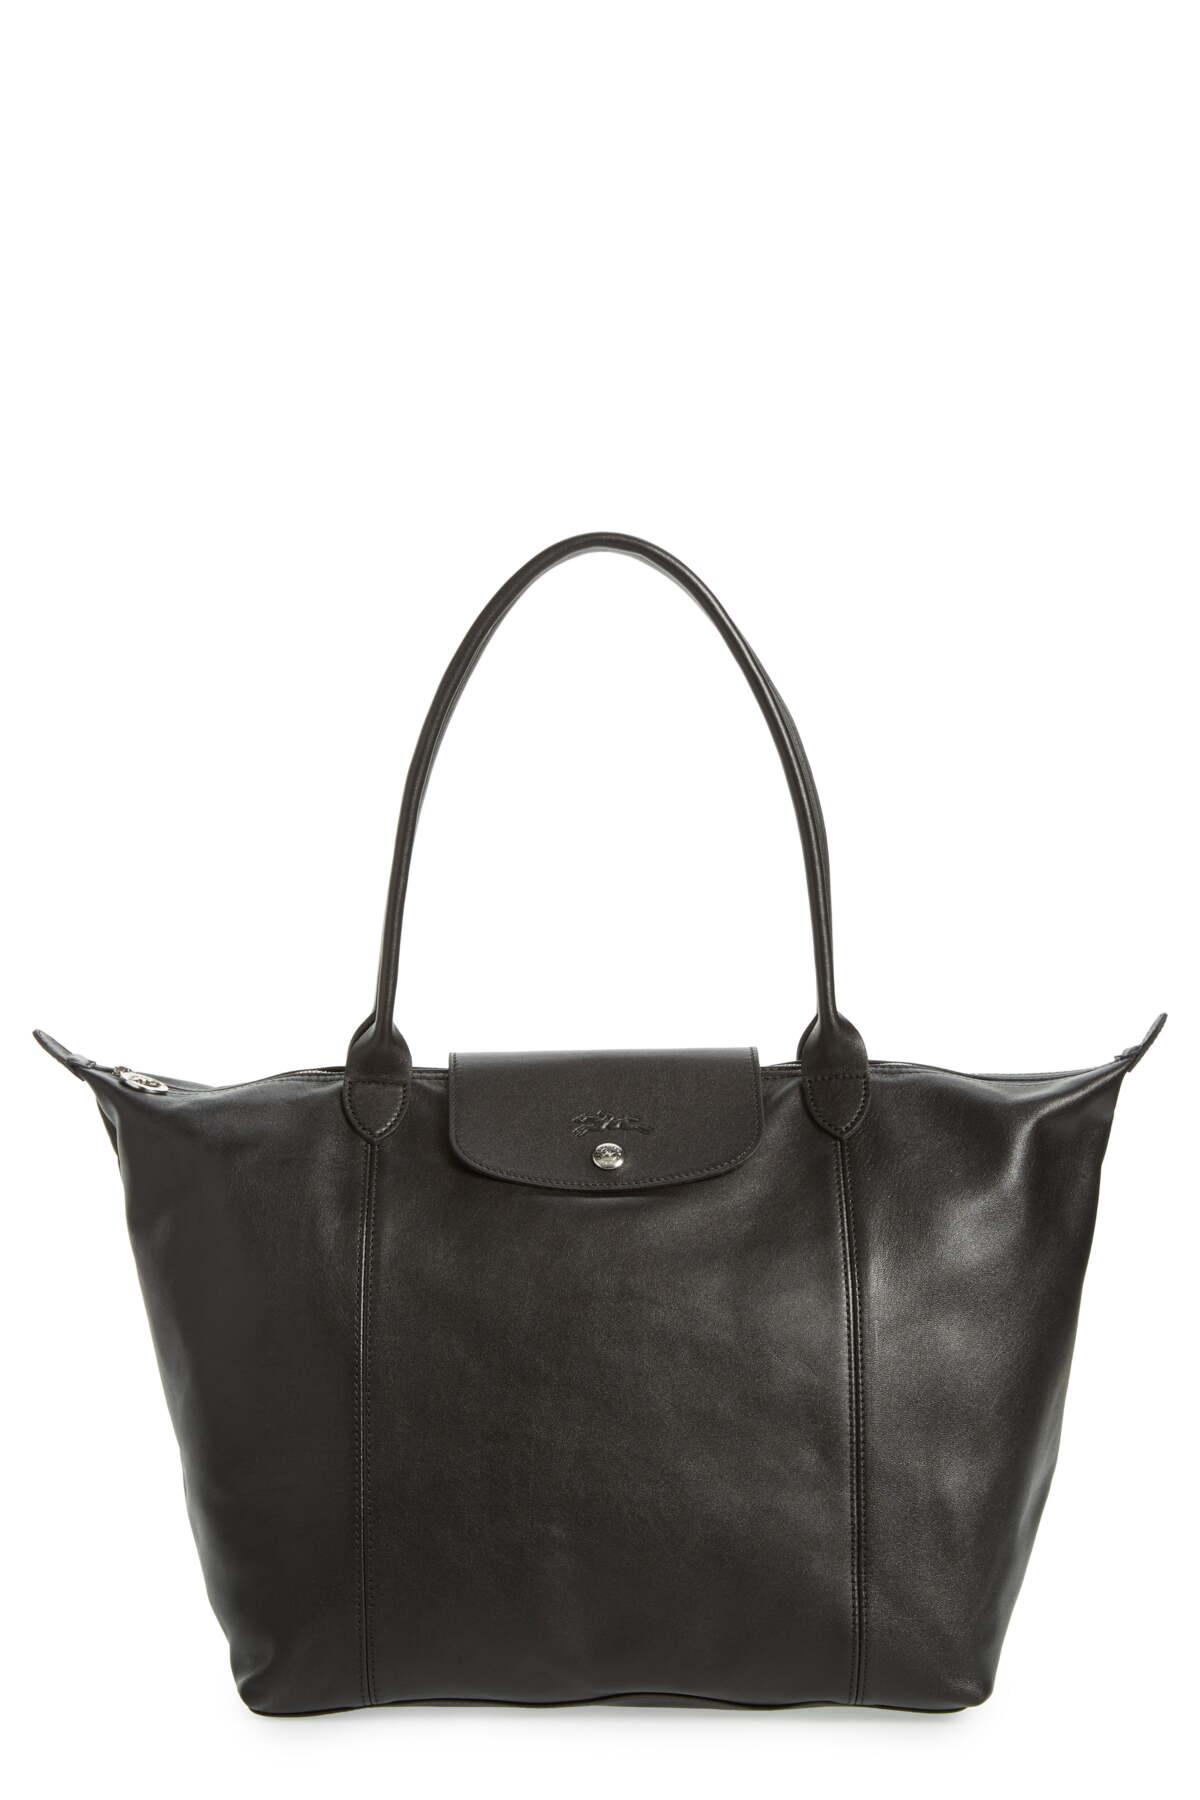 Longchamp Le Pliage Cuir leather bag large